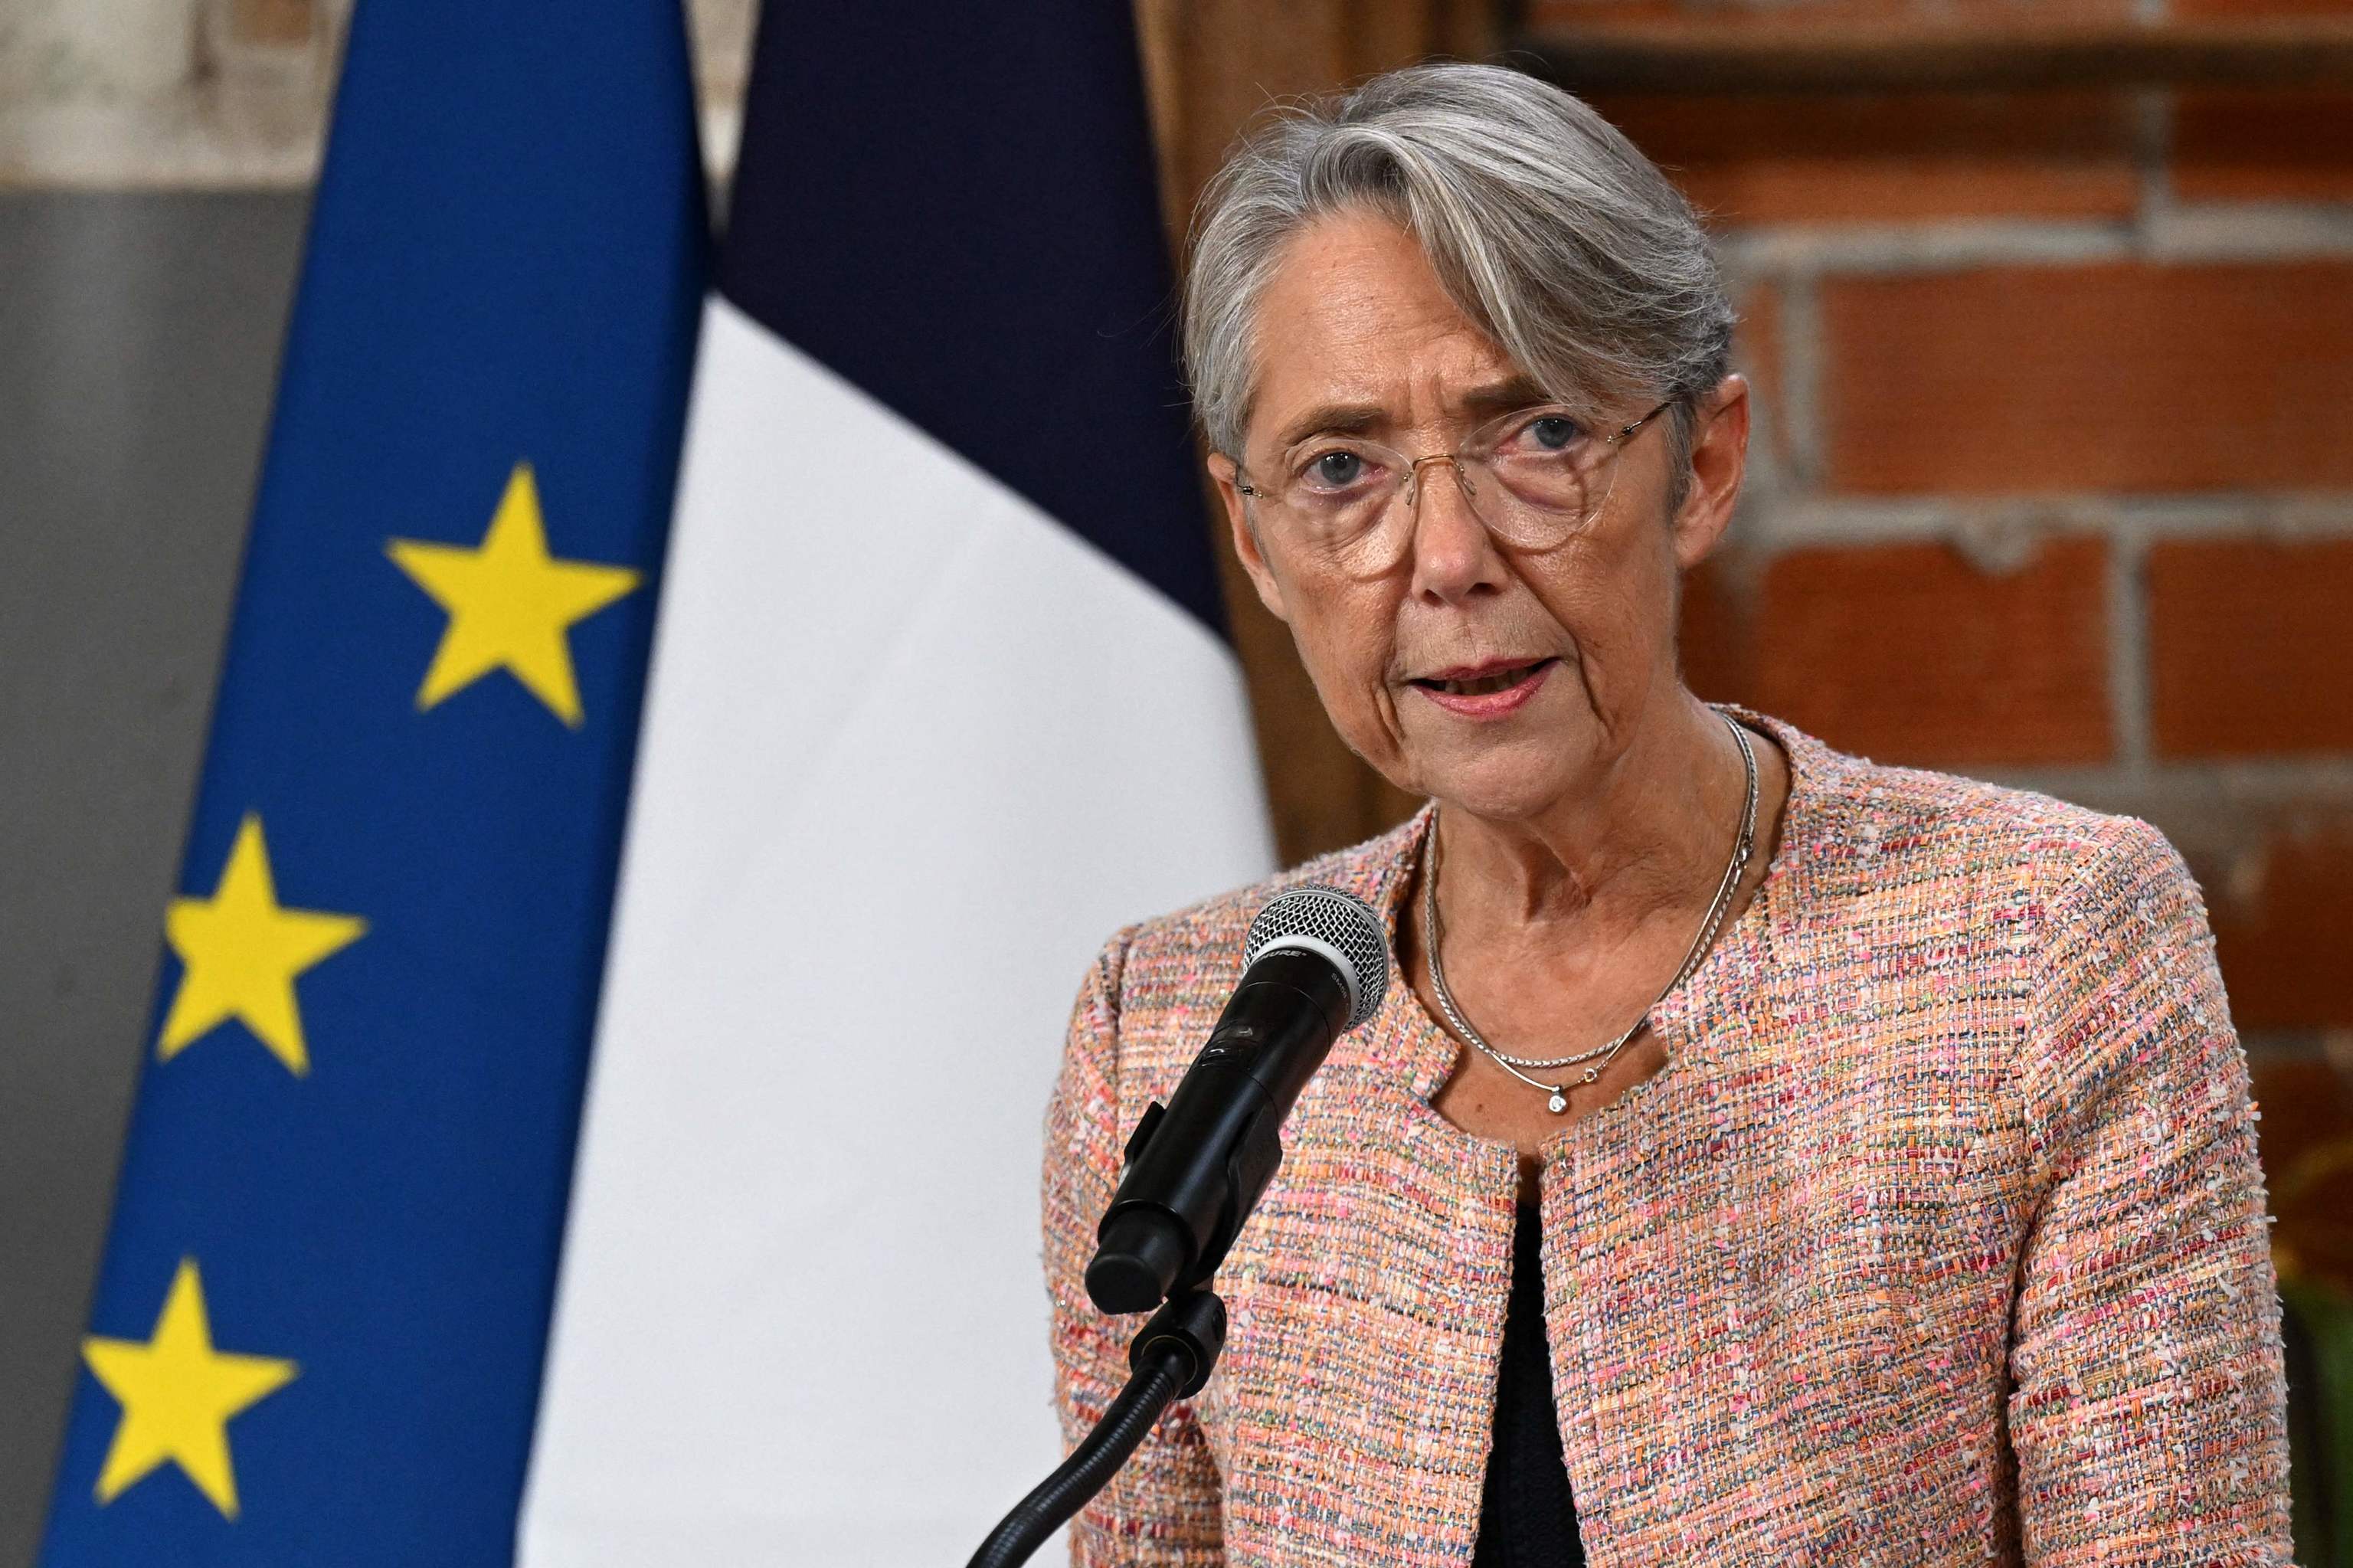 La primera ministra de Francia, Elisabeth Borne, pronuncia un discurso en el lanzamiento de los veintids proyectos relacionados con la planificacin ecolgica que se llevarn a cabo bajo el lema "France Green Nation" en Pars el 21 de octubre de 2022